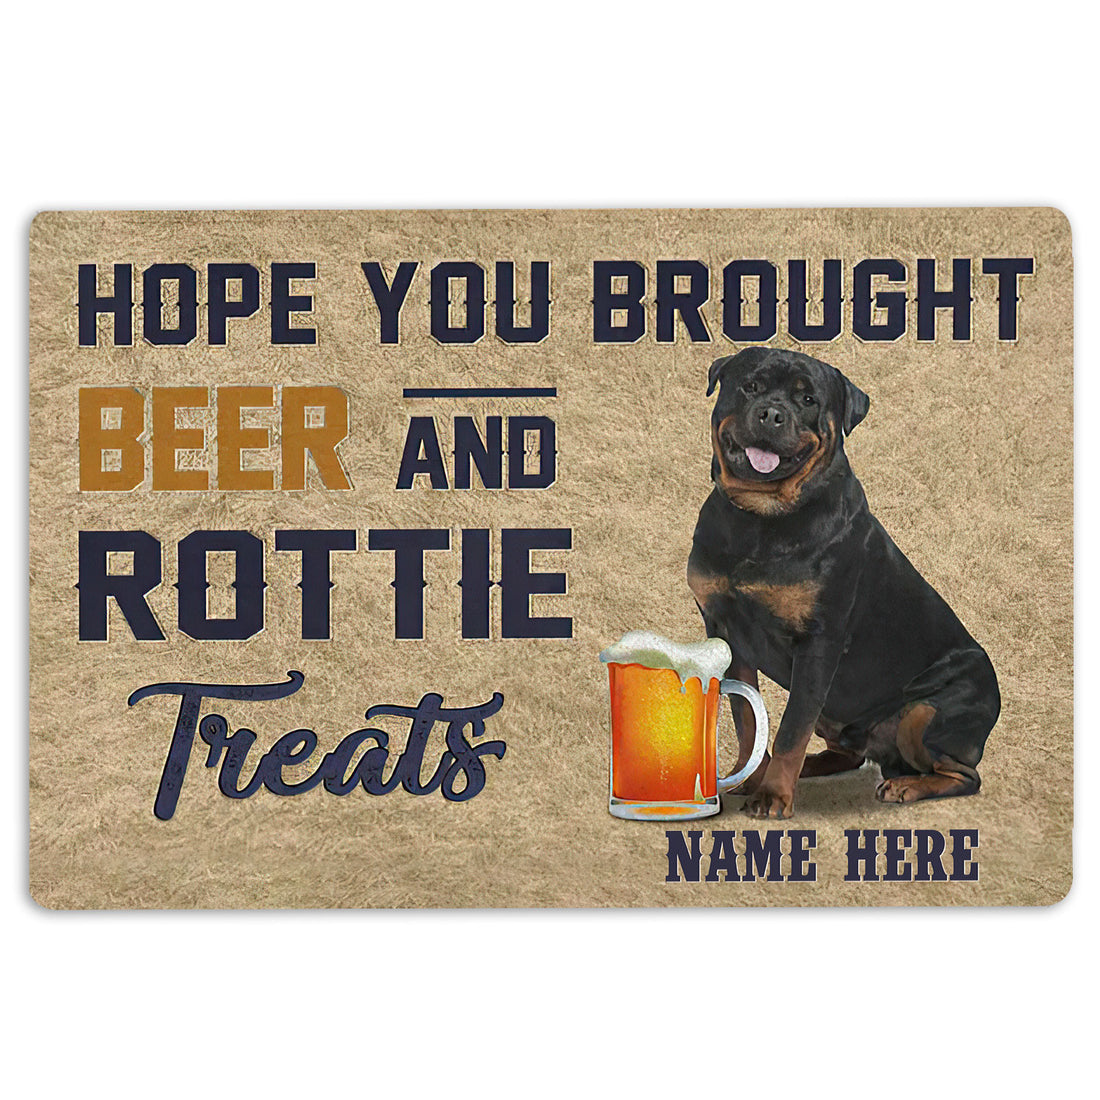 Ohaprints-Doormat-Outdoor-Indoor-Brought-Beer-And-Rottie-Treat-Custom-Personalized-Name-Rubber-Door-Mat-1972-18'' x 30''